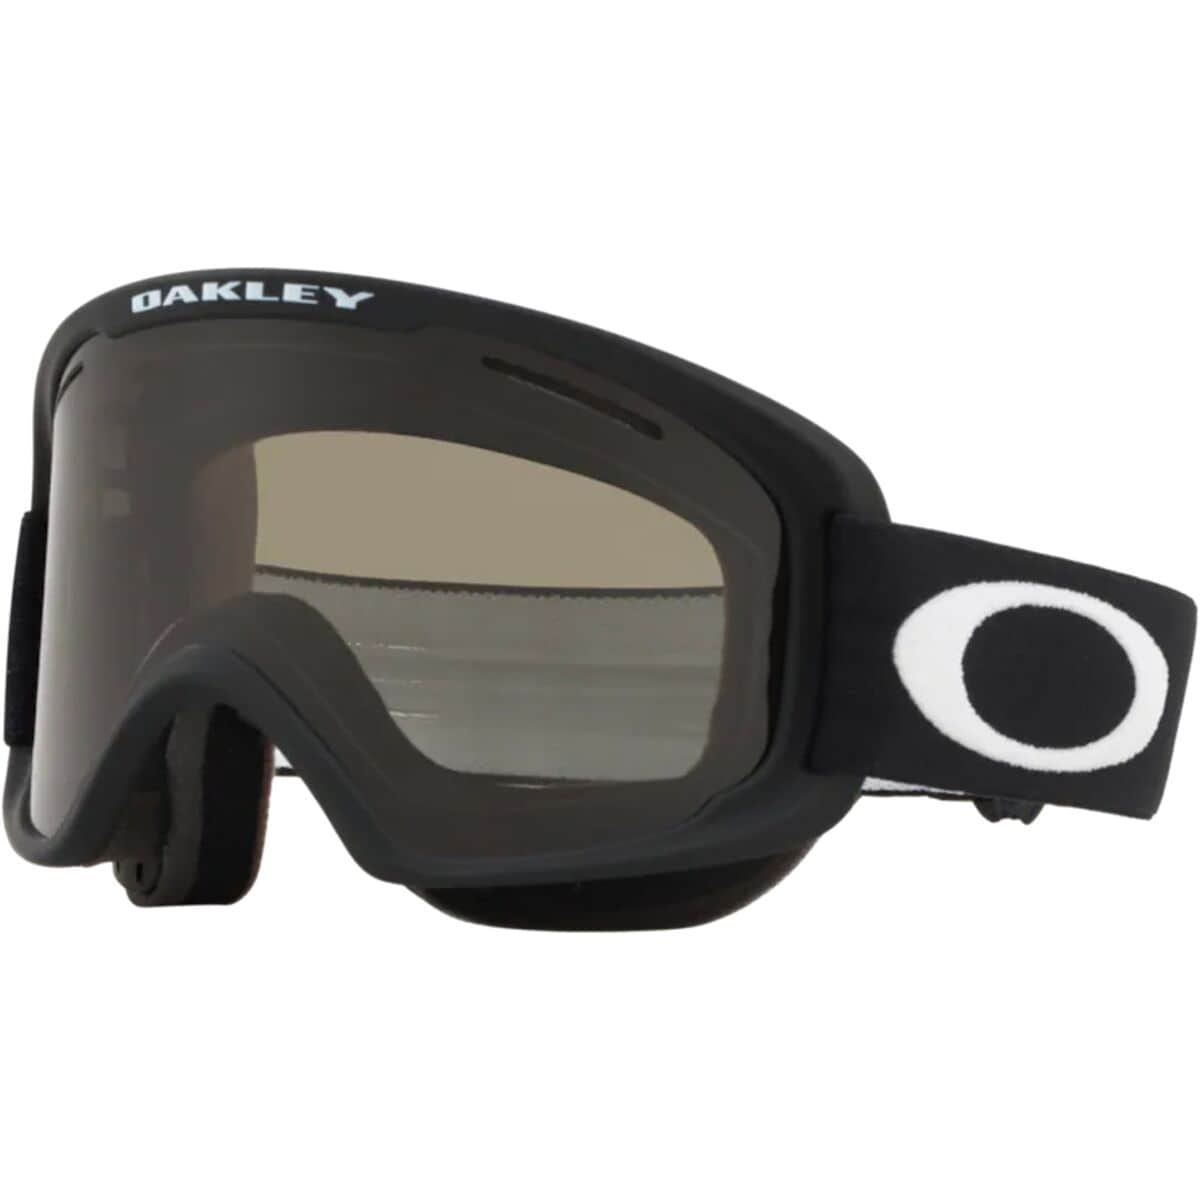 Photos - Ski Goggles Oakley O Frame 2.0 Pro XL Goggles 